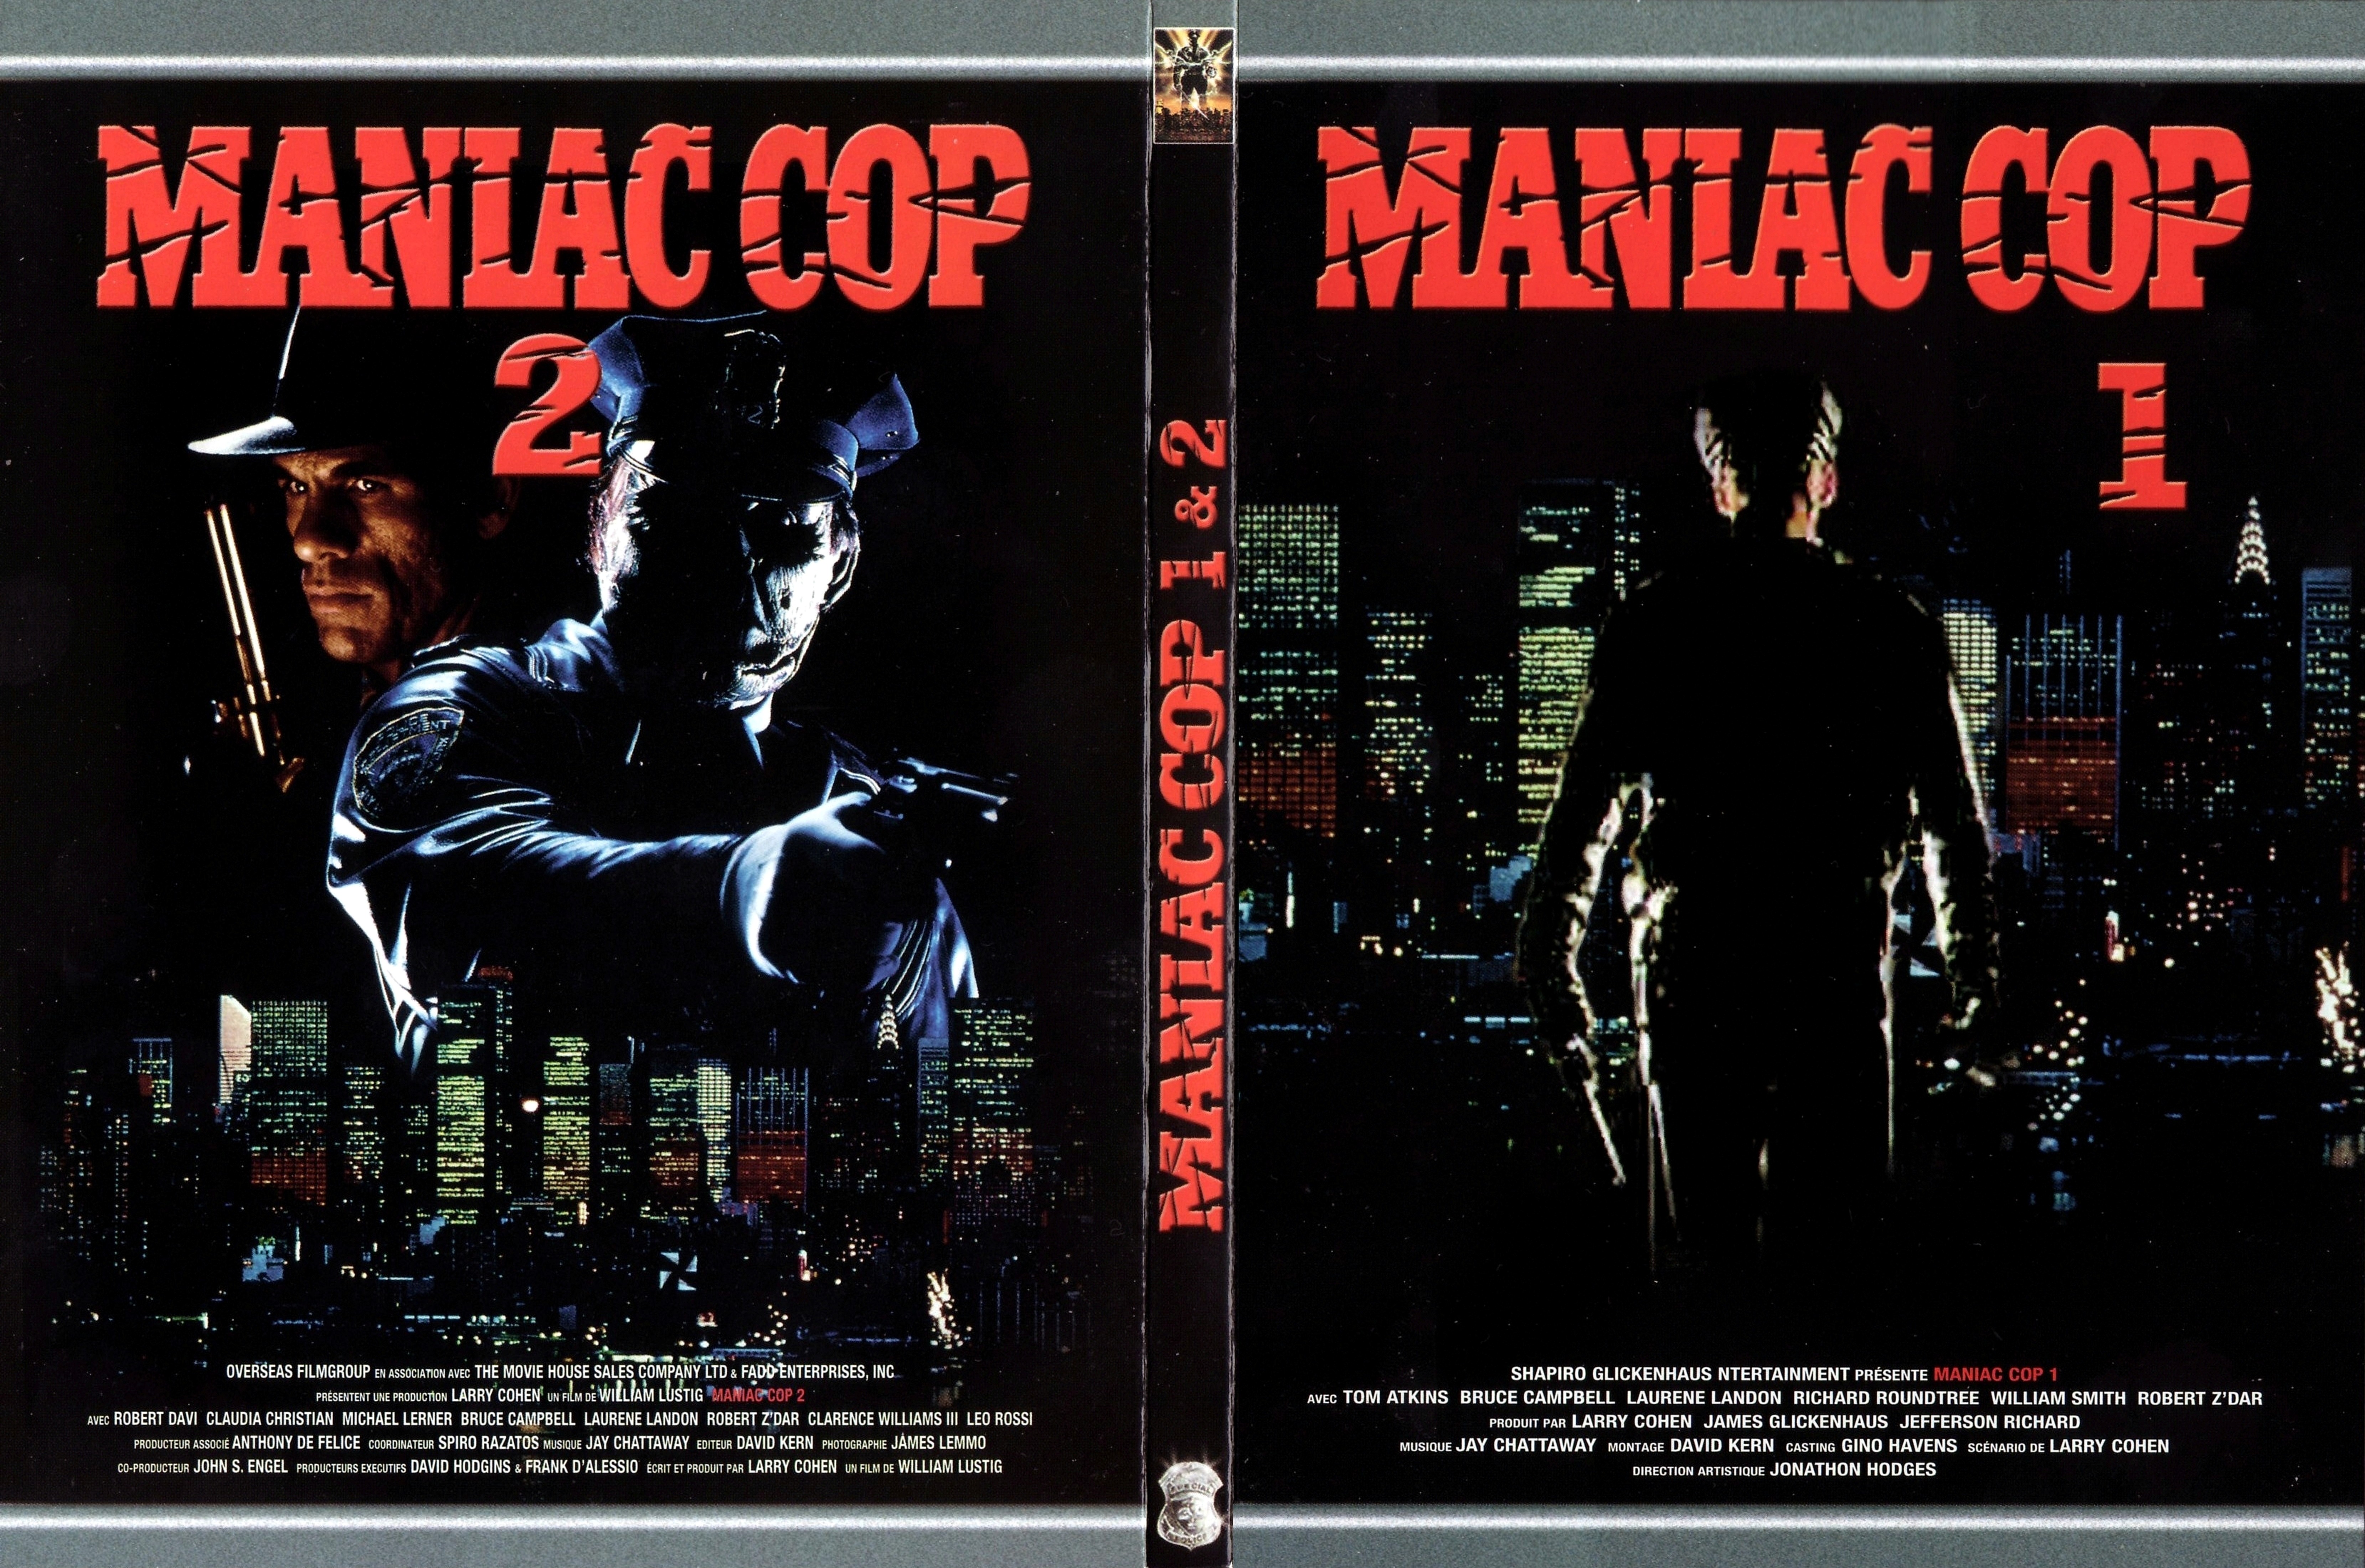 Jaquette DVD Maniac cop 1 et 2 v3